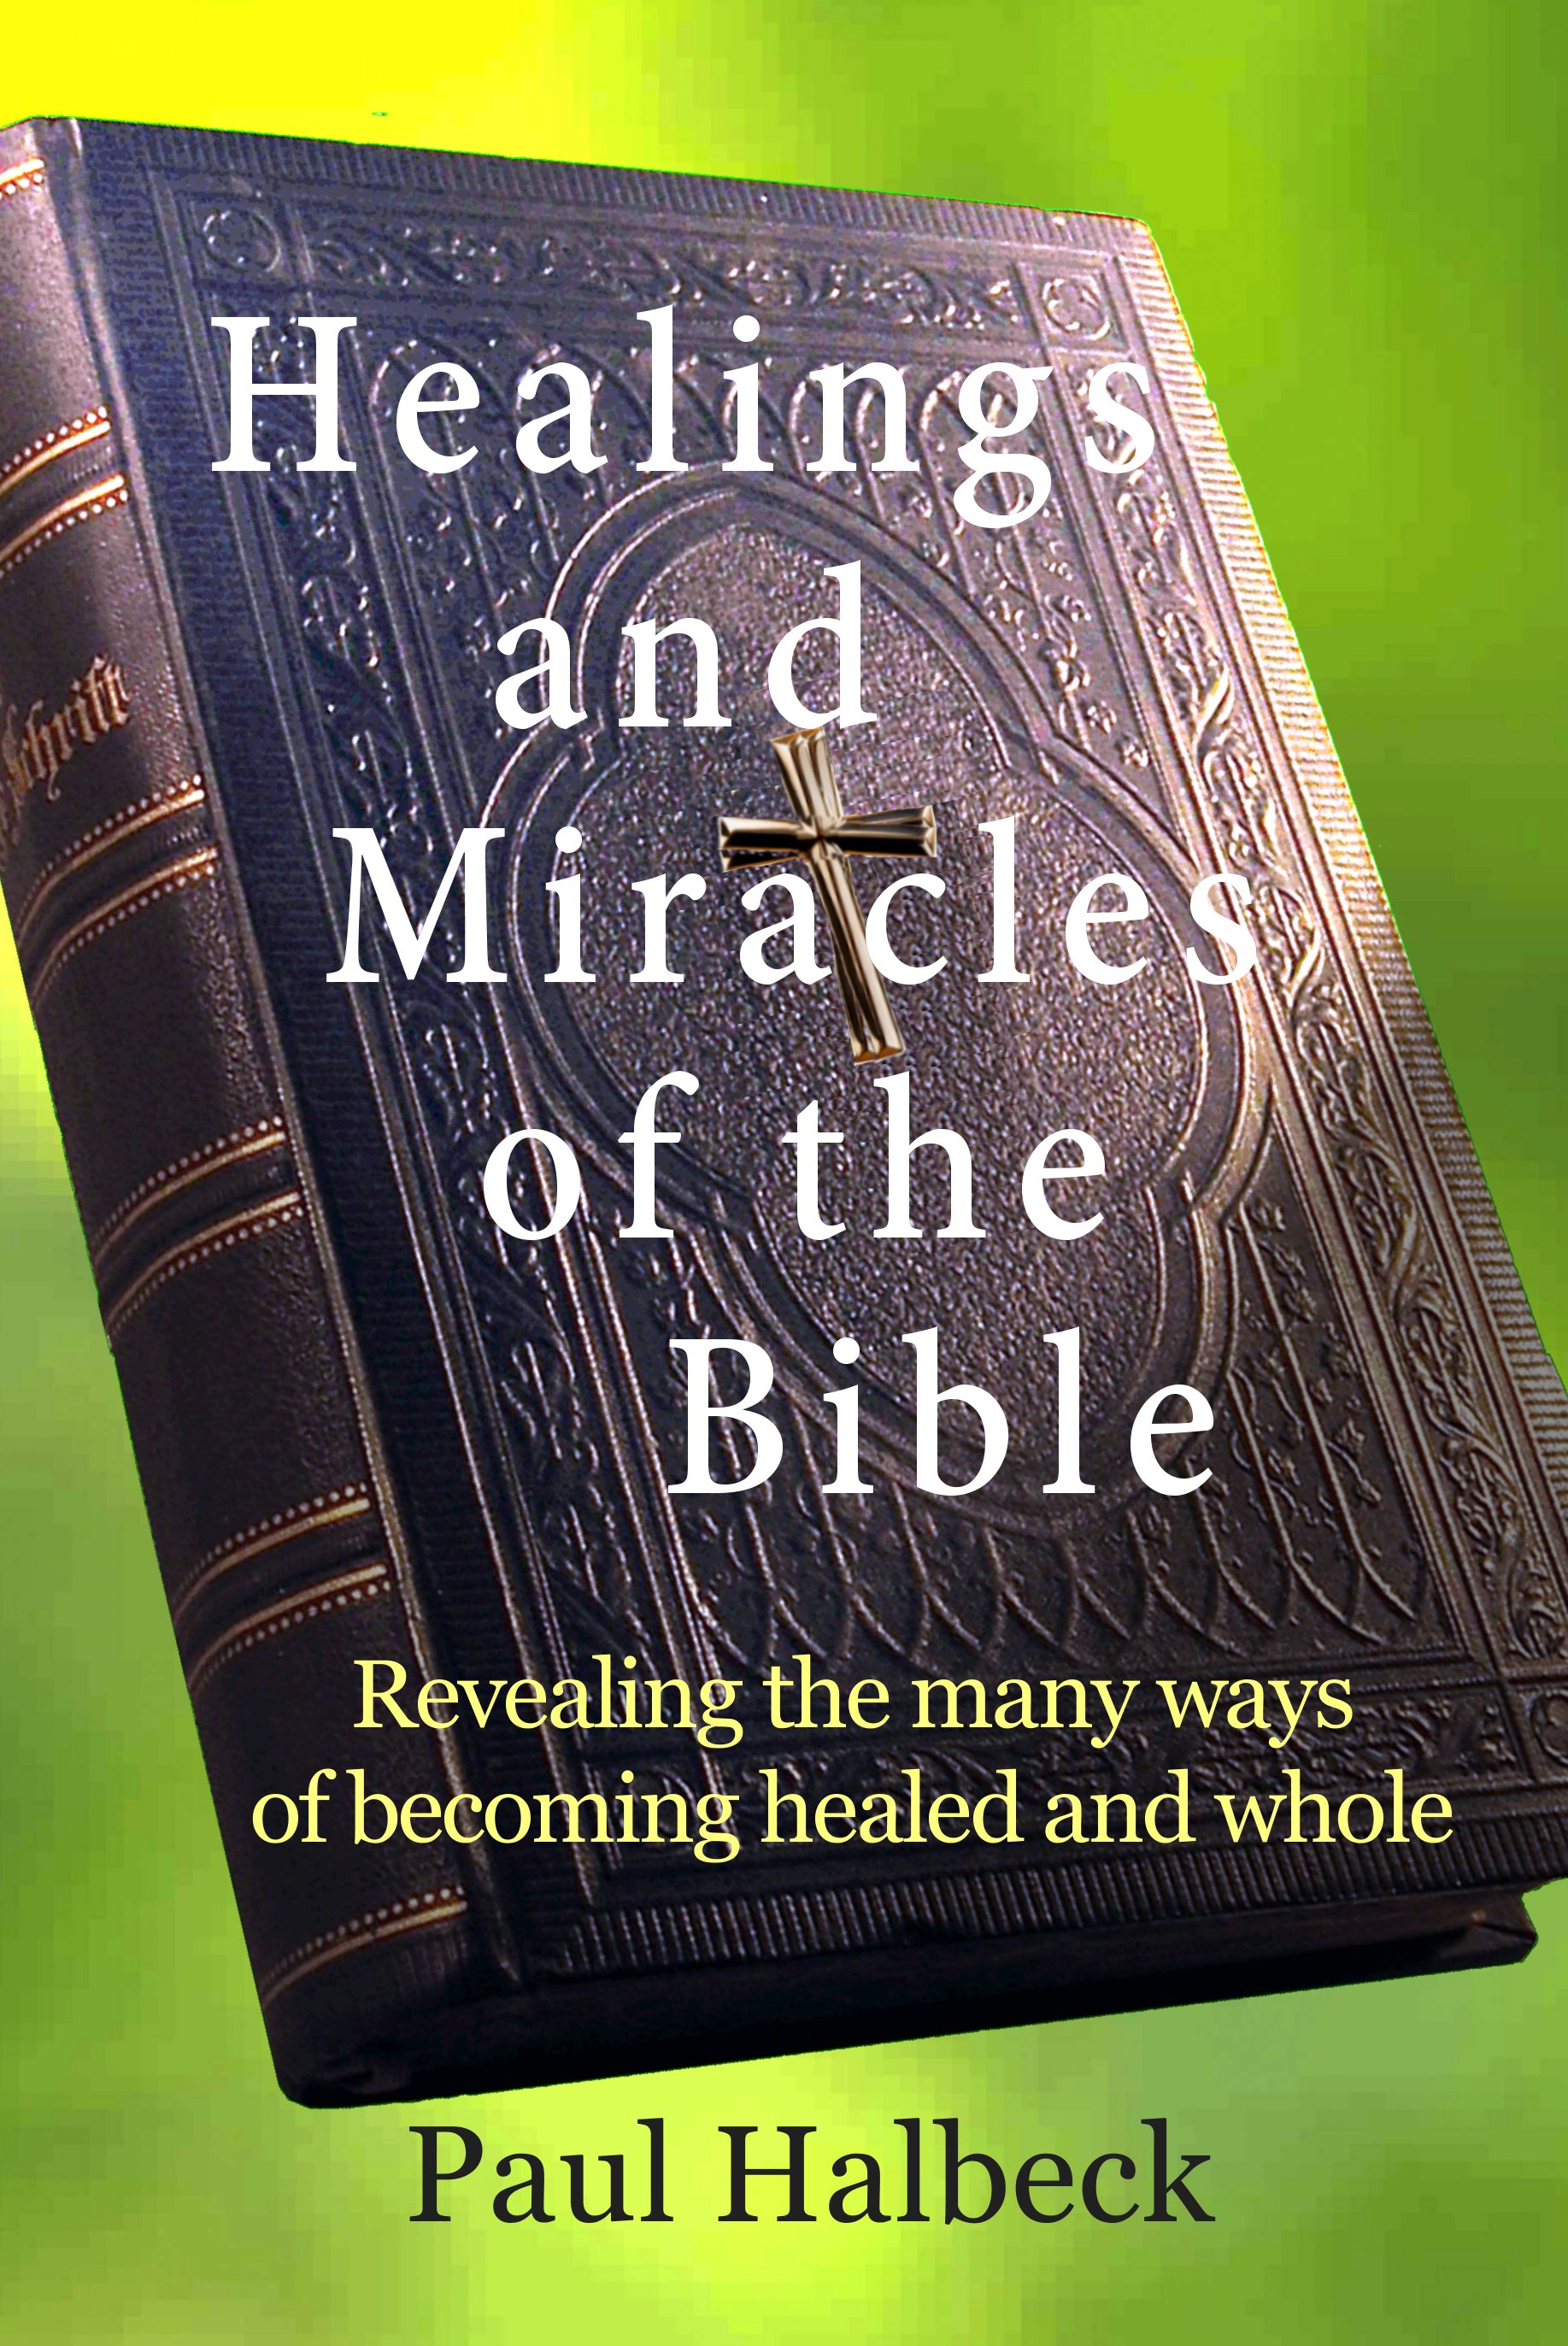 Healings of the Bible